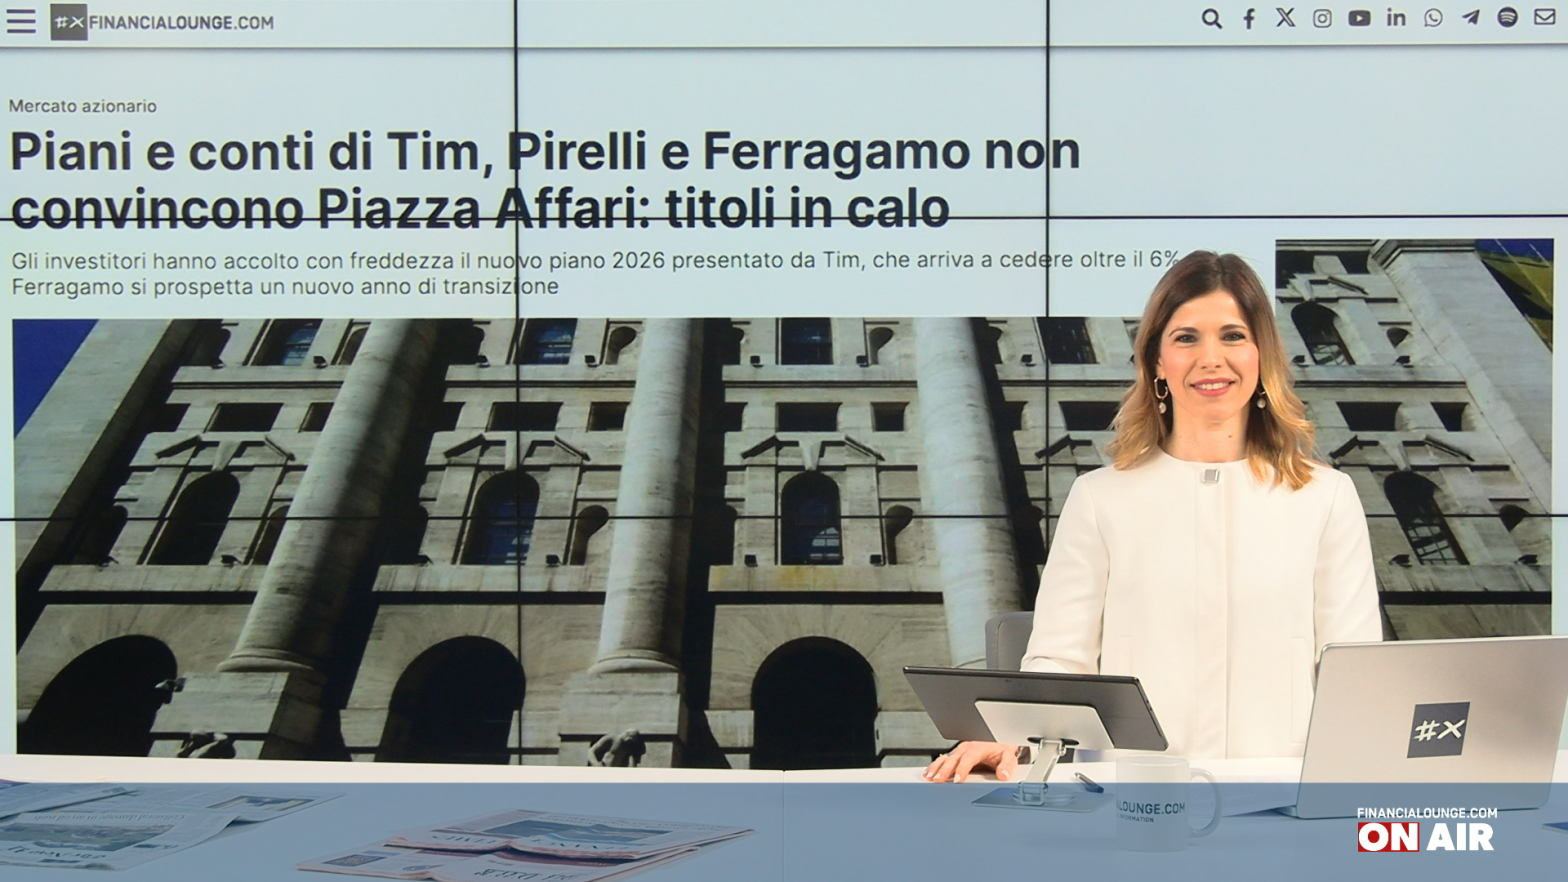 financialounge.com Tim, Pirelli e Ferragamo in ribasso a Piazza Affari nel giorno della Bce - Edizione del 7 marzo